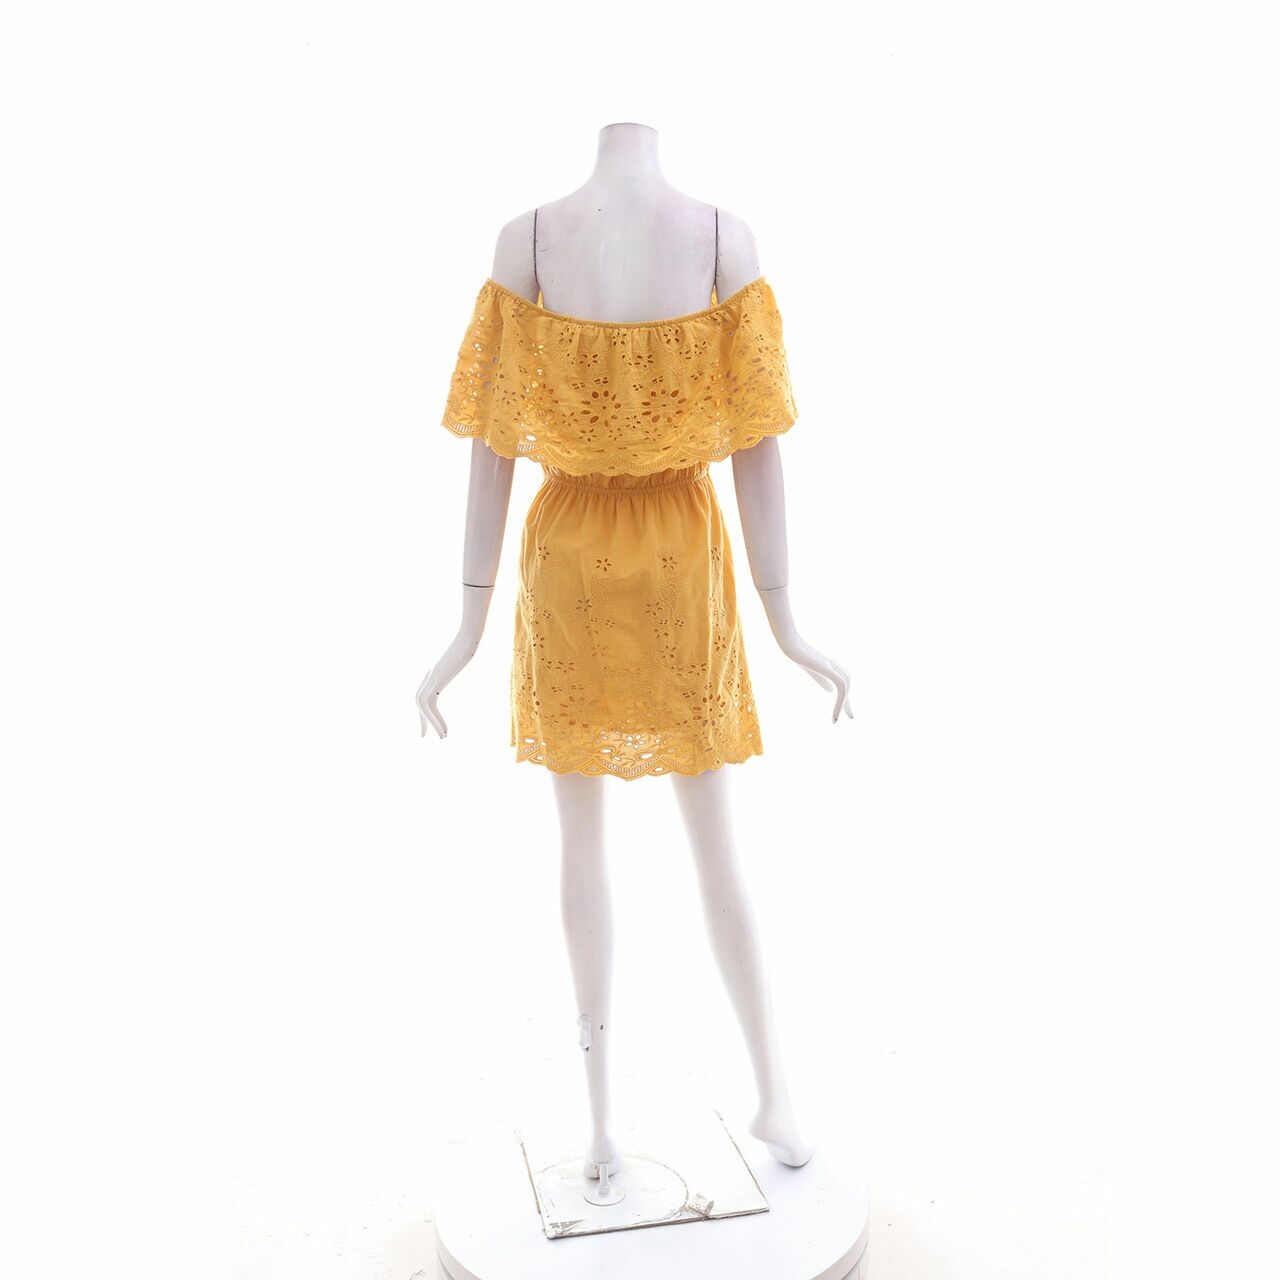 Tobi Mustard Perforated Mini Dress